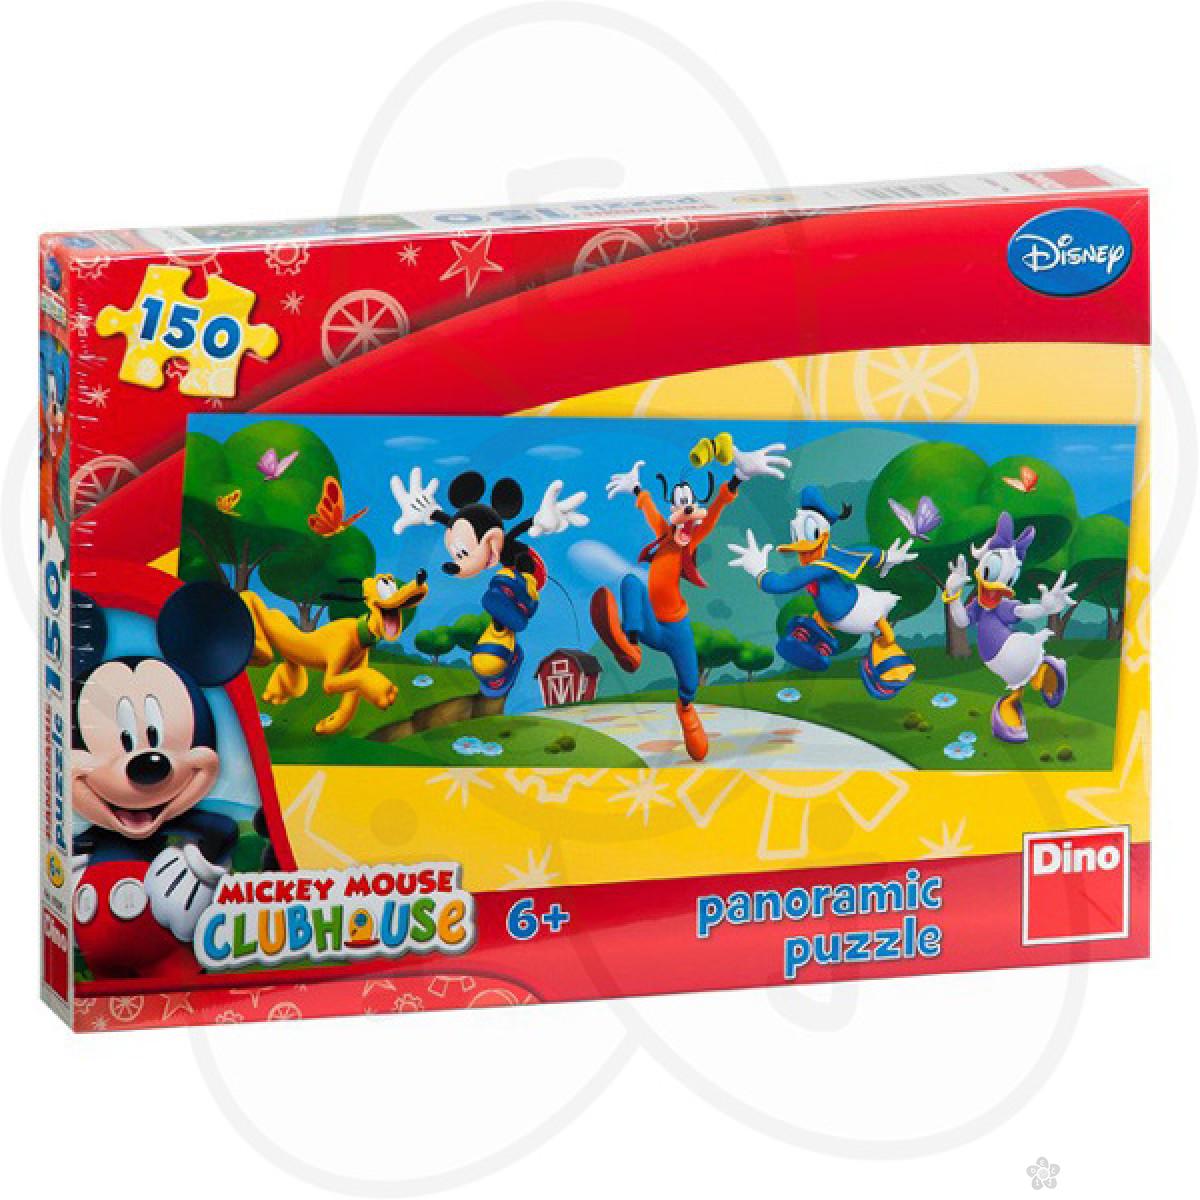 Puzzle za decu Disney Mickey Mouse Clubhouse panoramic puzzle 150 delova 